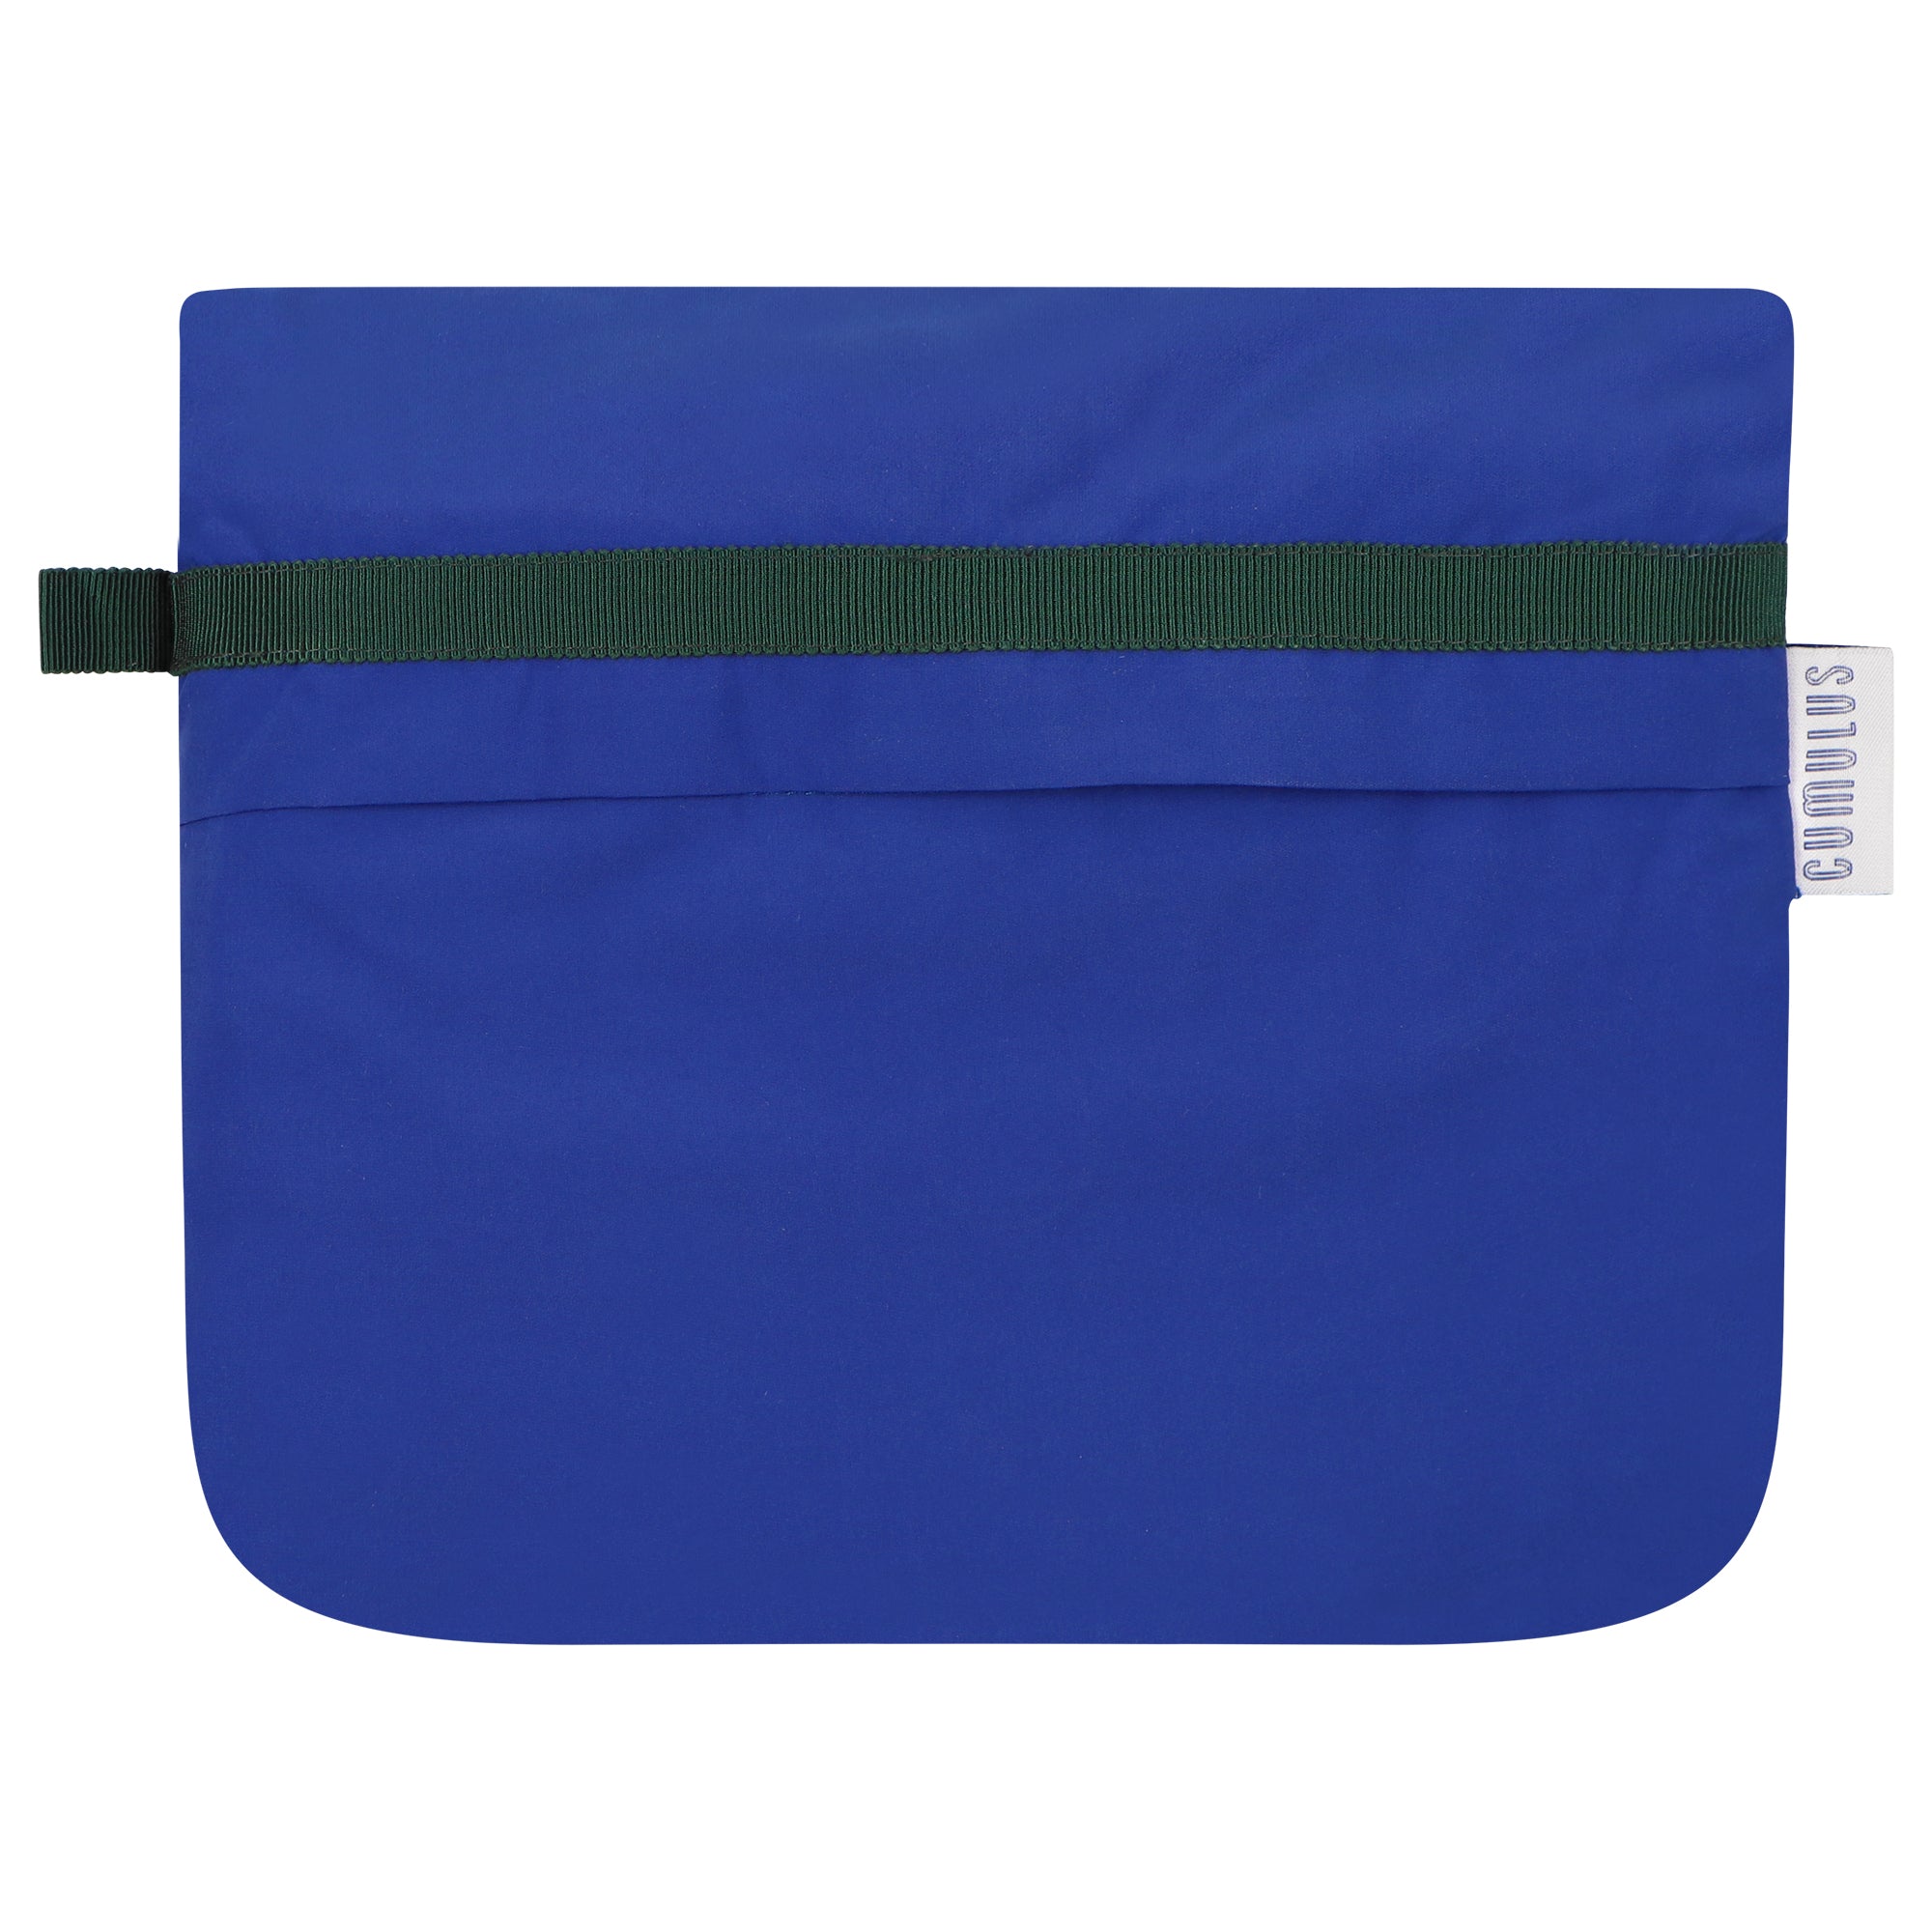 Bise raincoat - Royal Blue color - pouch bag